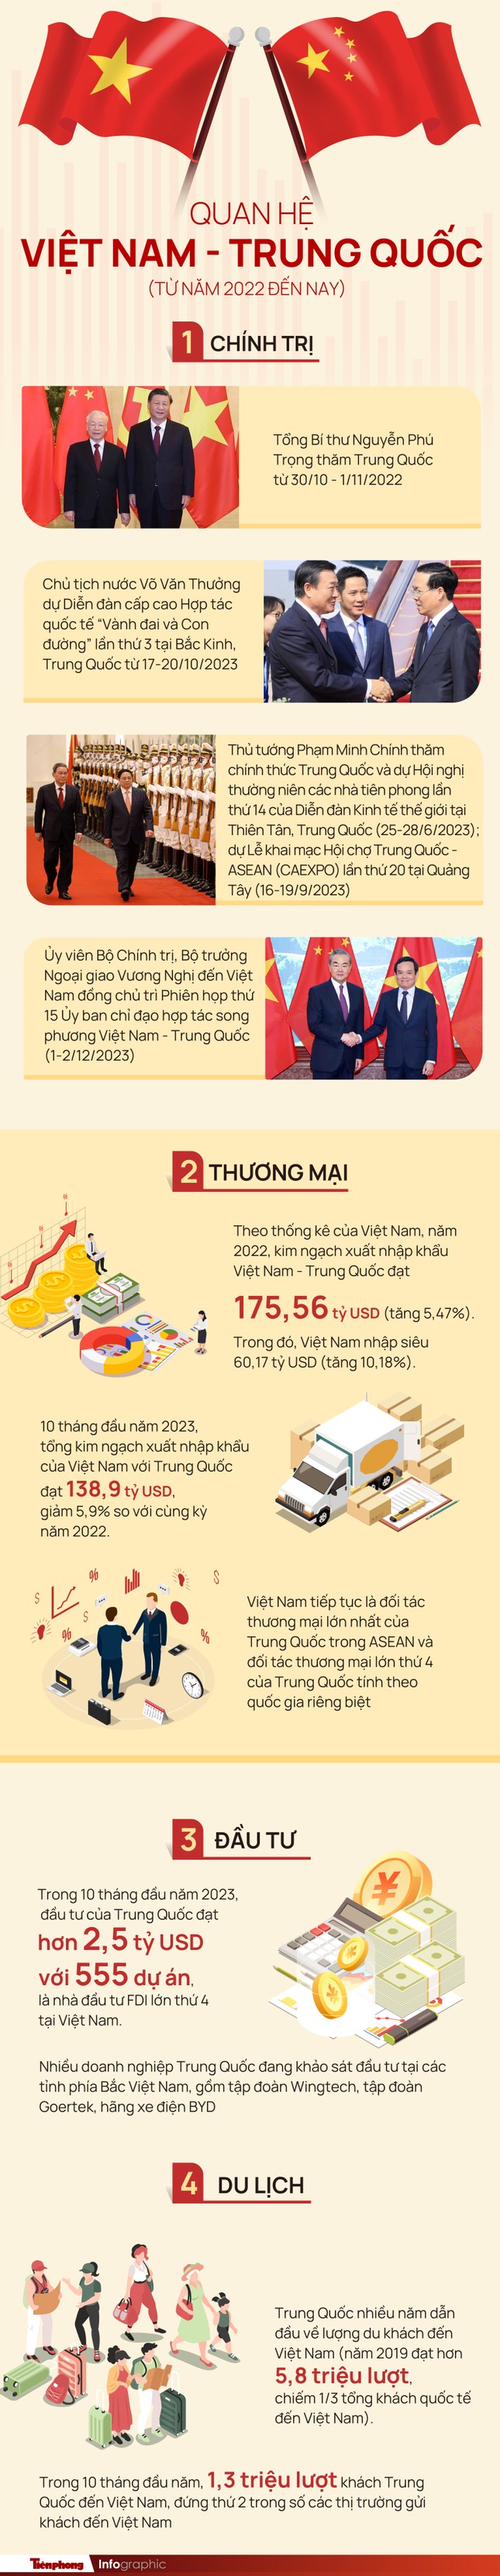 Viết tiếp những trang mới cho truyền thống hữu nghị tốt đẹp Việt Nam - Trung Quốc ảnh 3